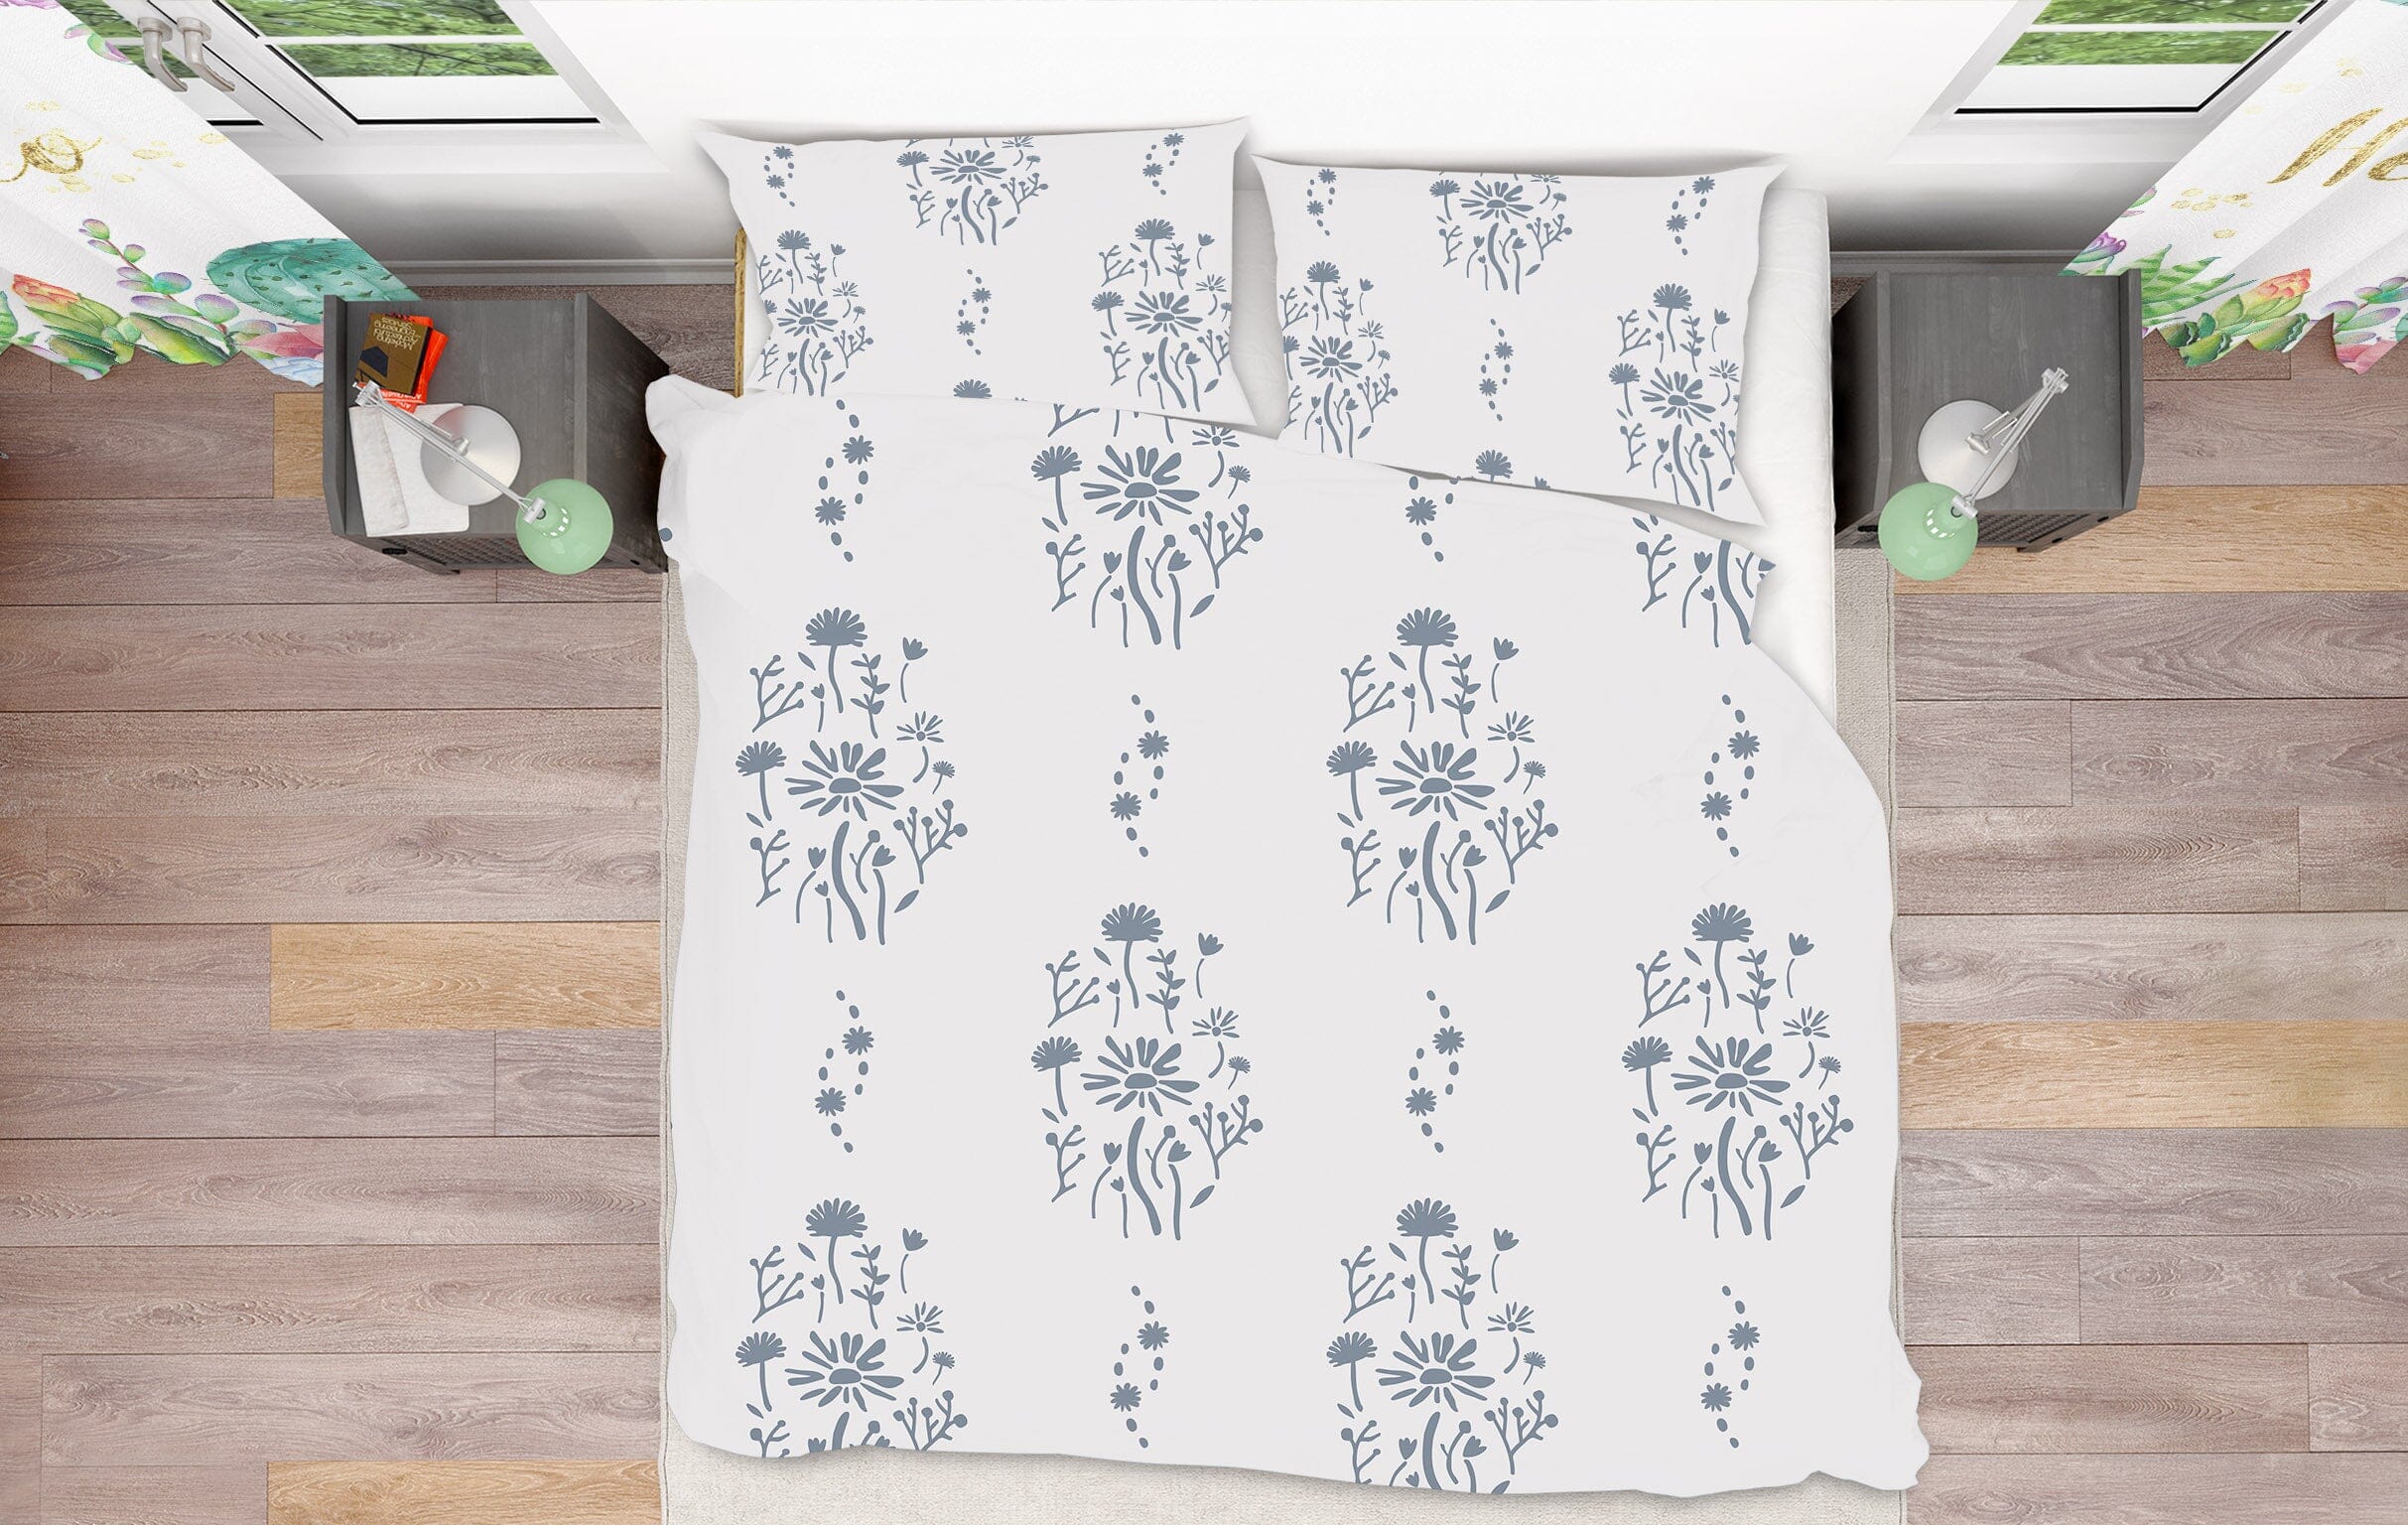 3D Flower Pattern 2101 Jillian Helvey Bedding Bed Pillowcases Quilt Quiet Covers AJ Creativity Home 